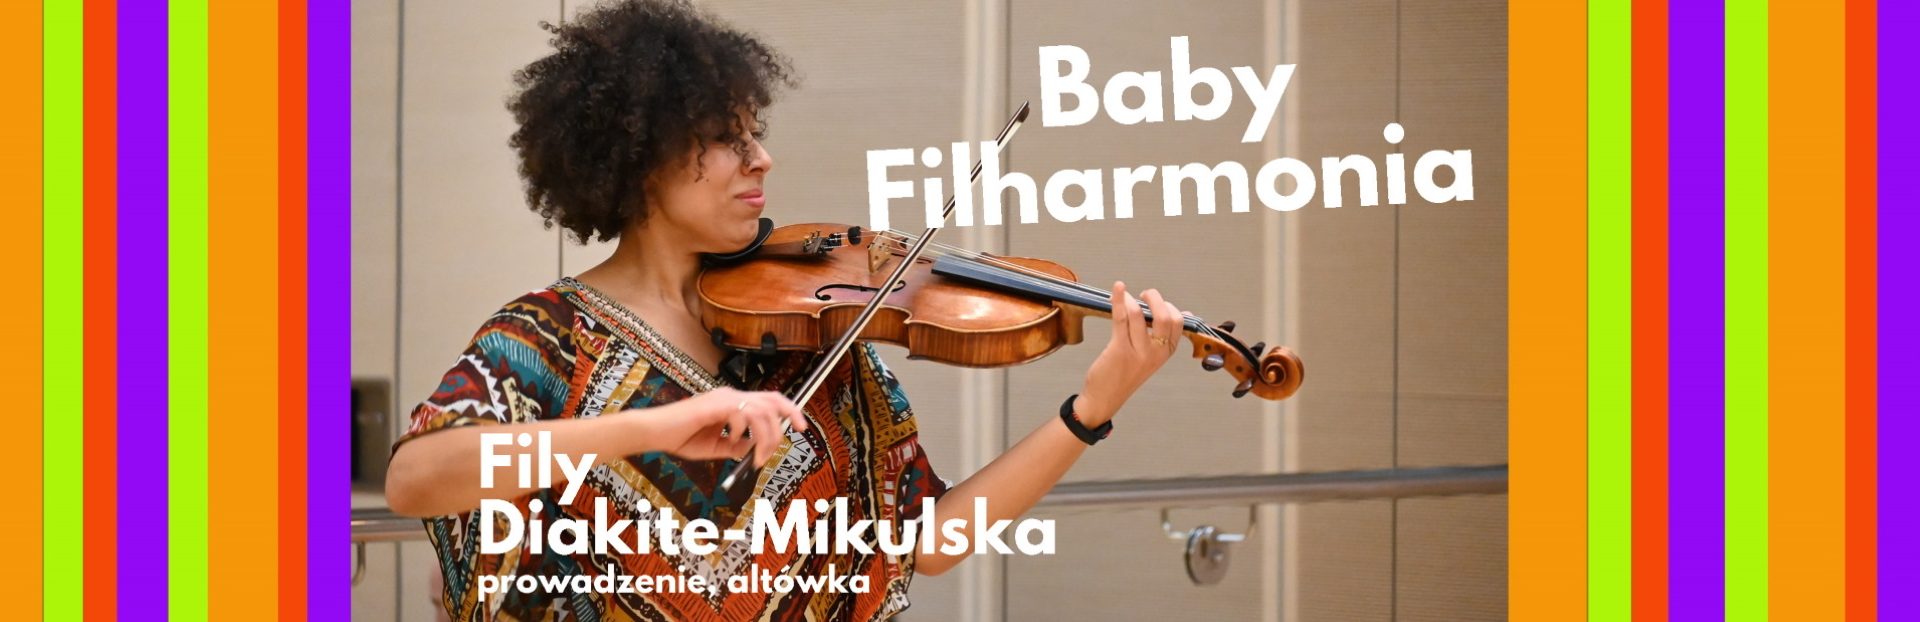 Plakat graficzny zapraszający do Olsztyna na Baby Filharmonia - zajęcia umuzykalniające dla dzieci w wieku 1-3 lat organizowane w Warmińsko-Mazurskiej Filharmonii w Olsztynie. 